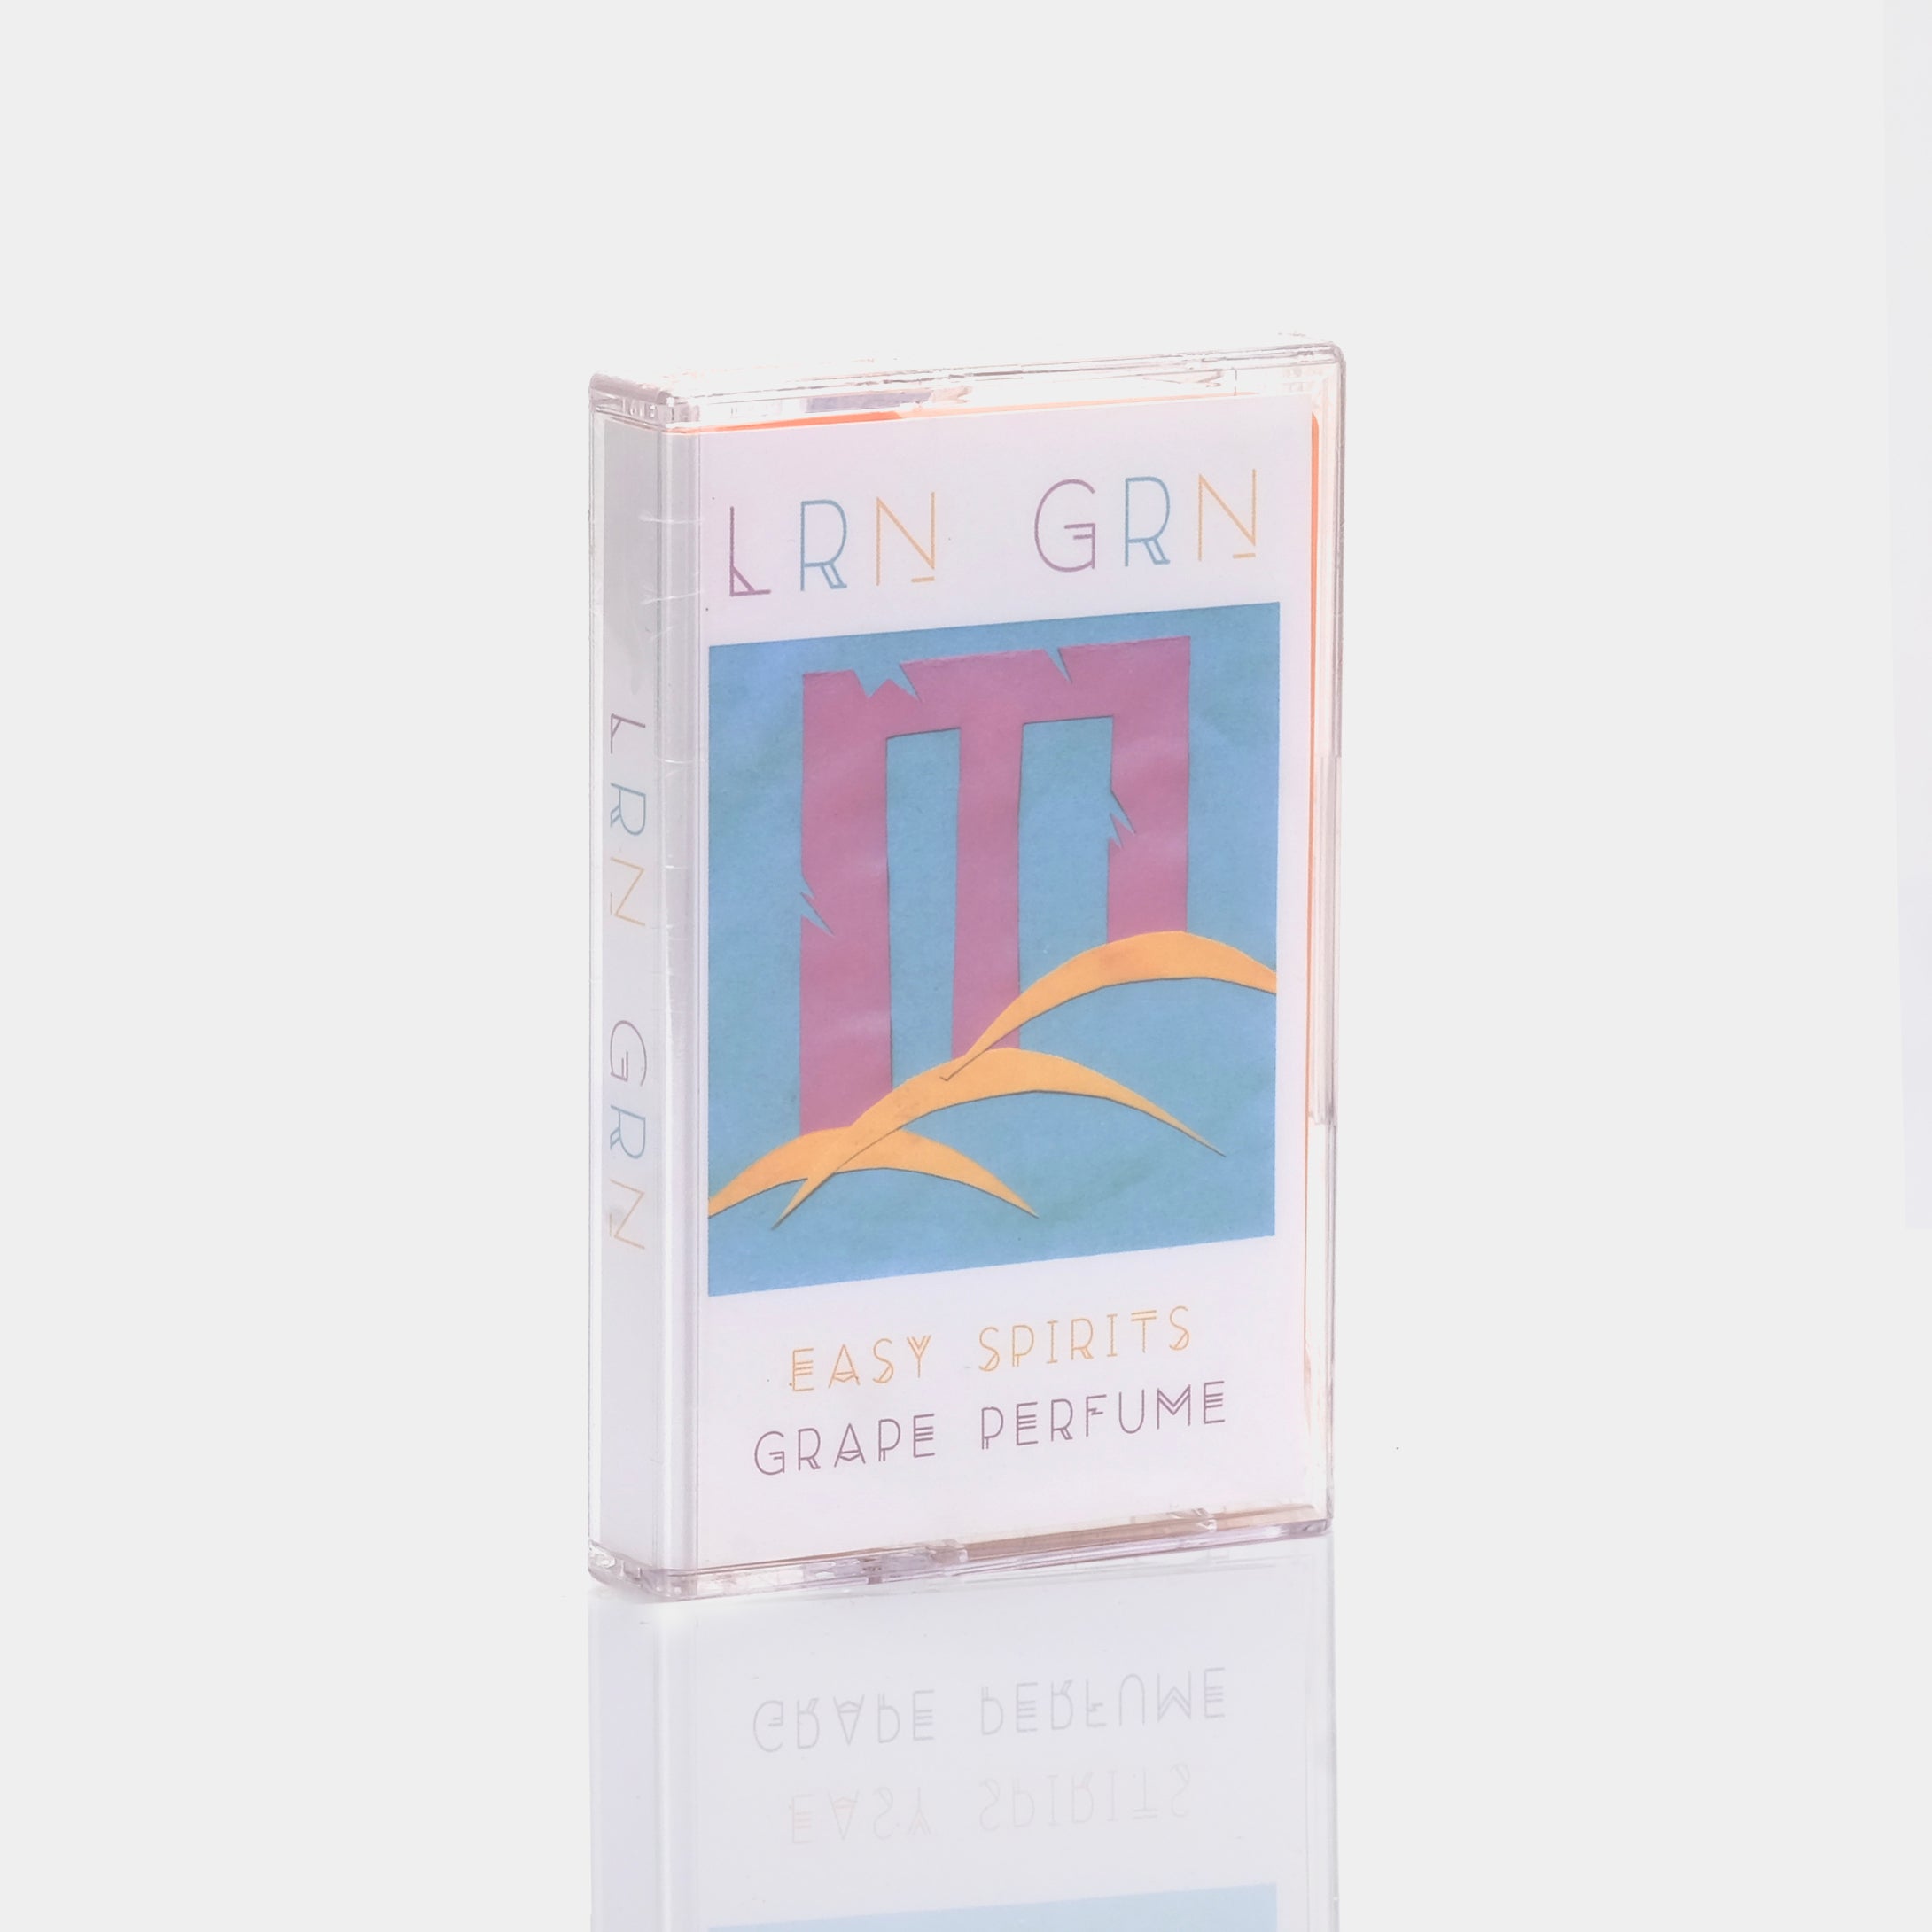 Lauren Green - Easy Spirits / Grape Perfume Cassette Tape